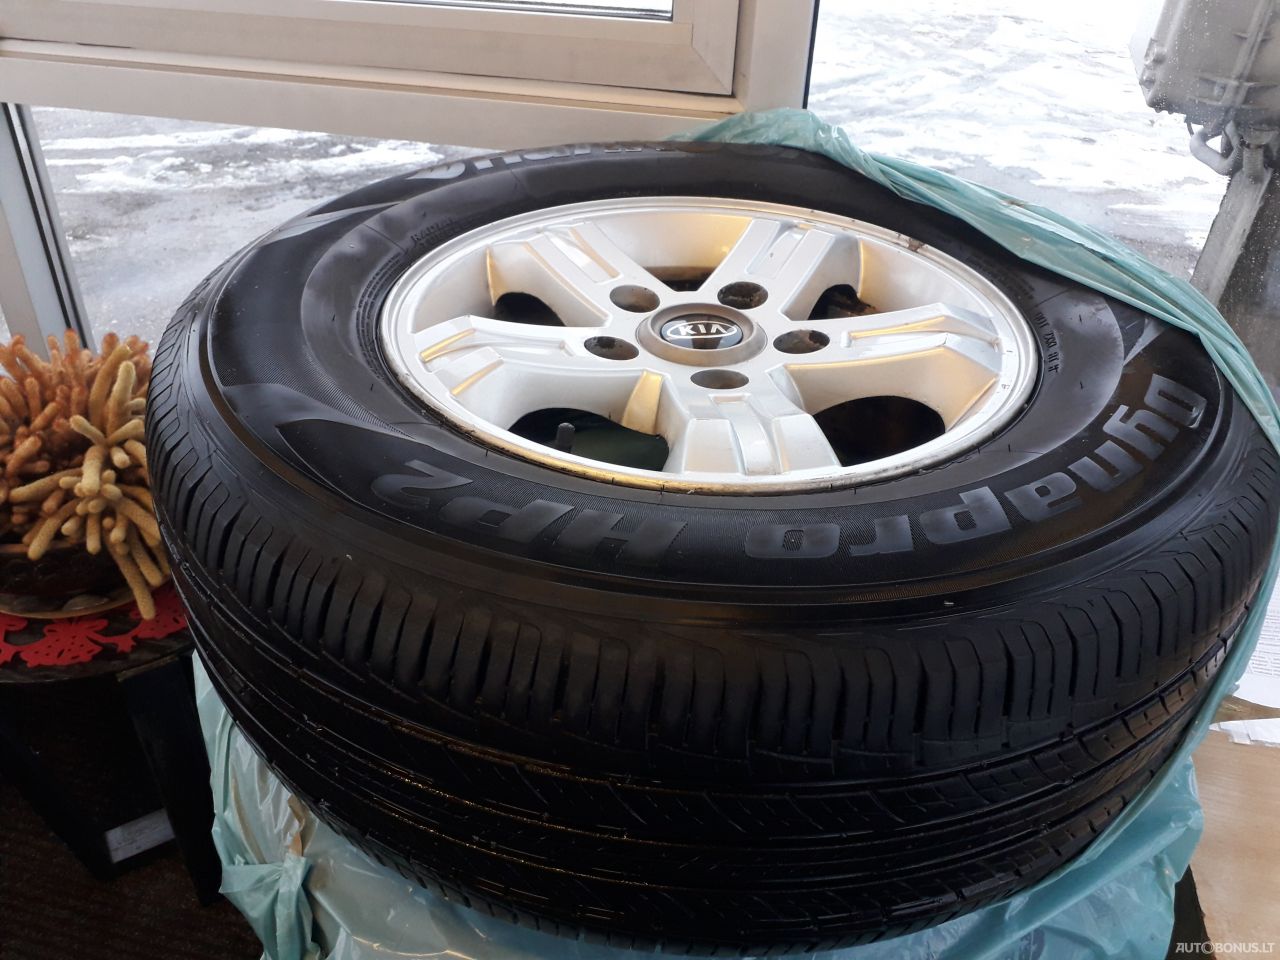 Hankook Radial Tubeless M+s summer tyres | 3